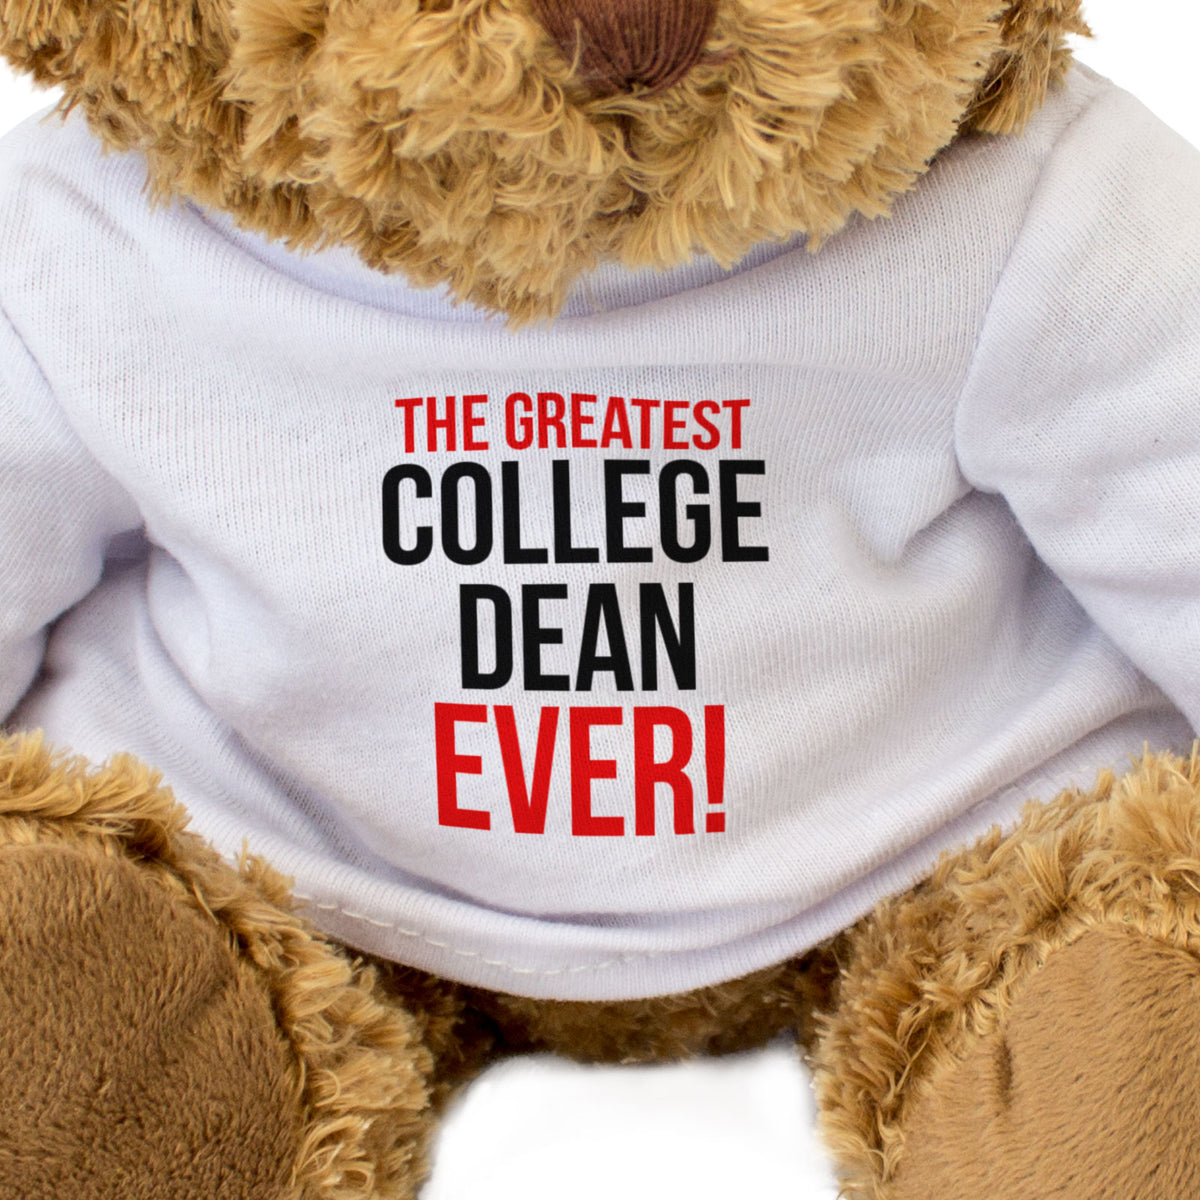 The Greatest College Dean Ever - Teddy Bear